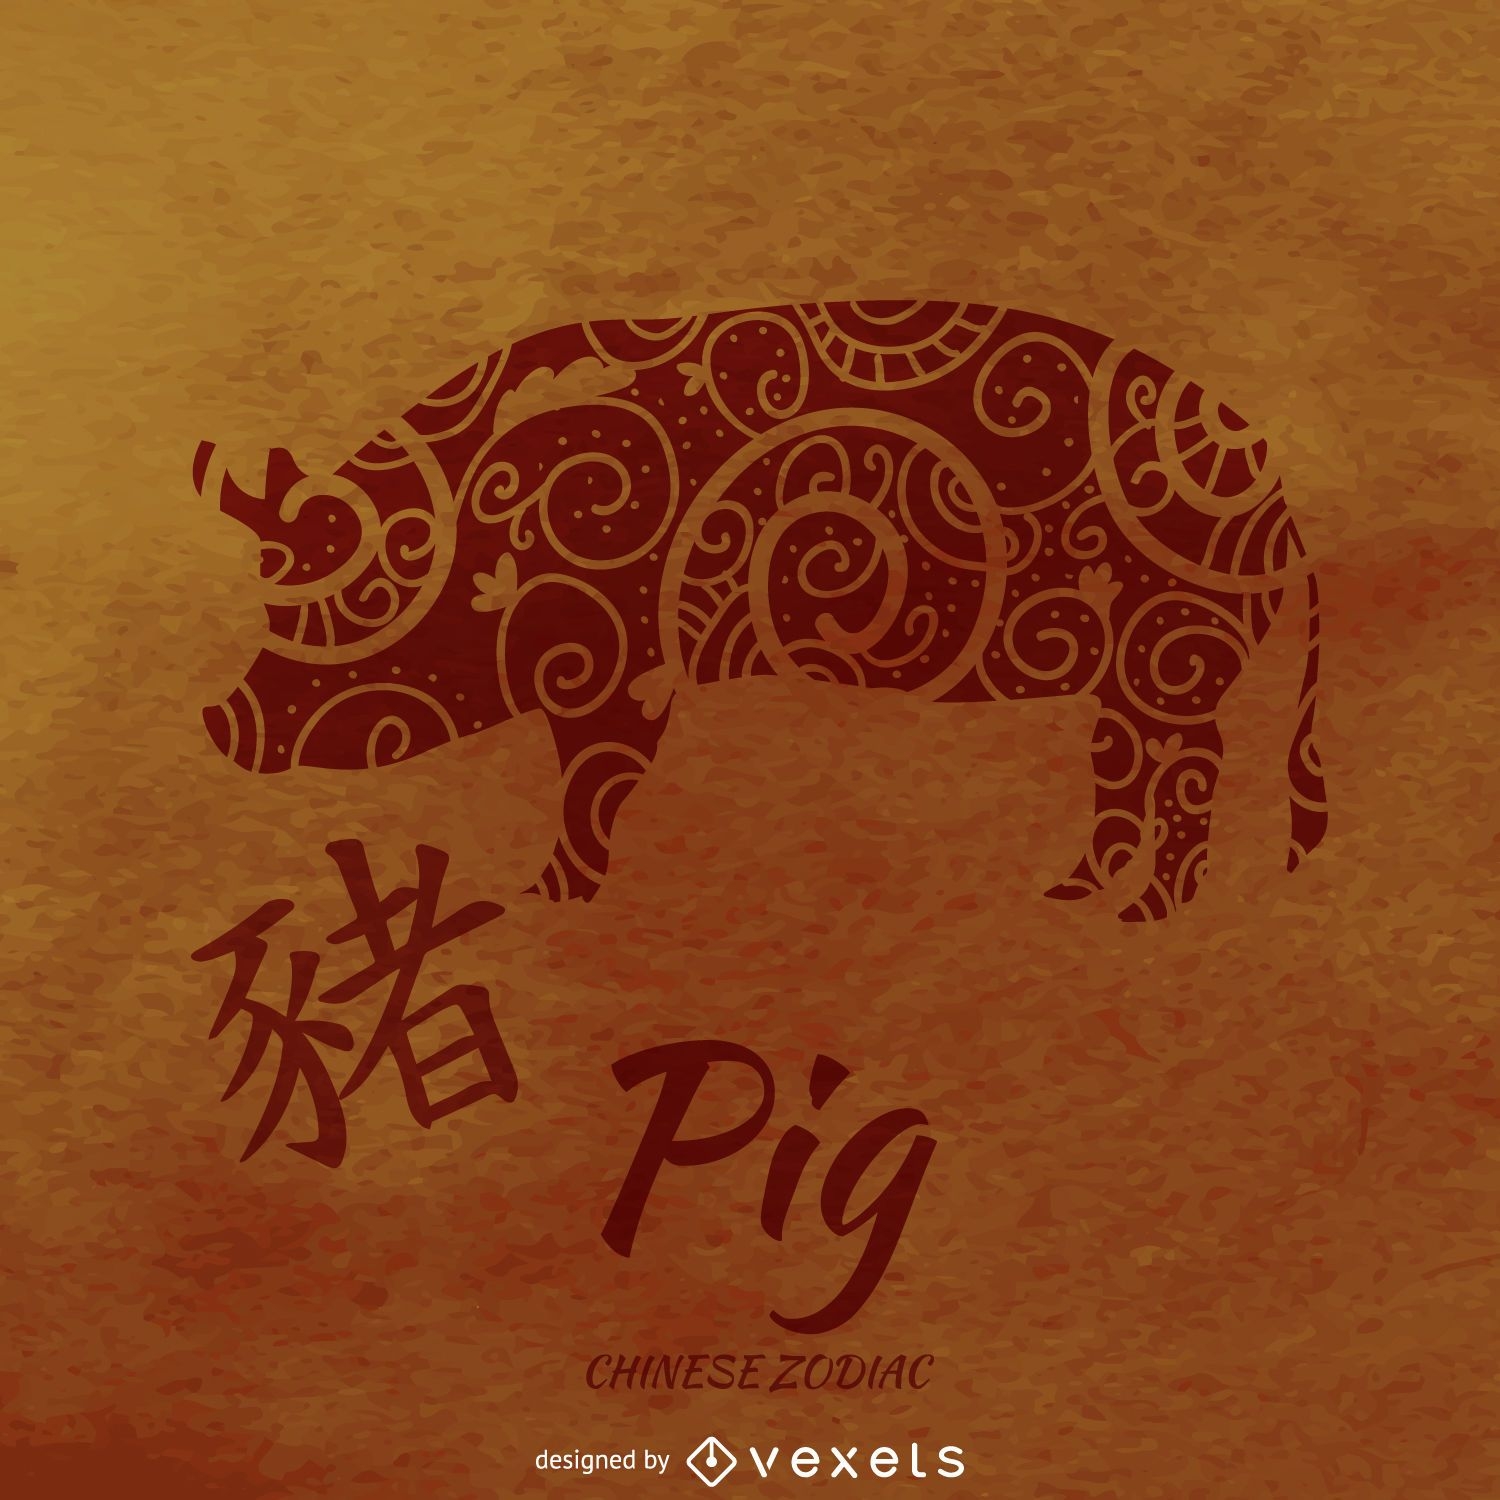 Zodiaco chino ilustrado del cerdo